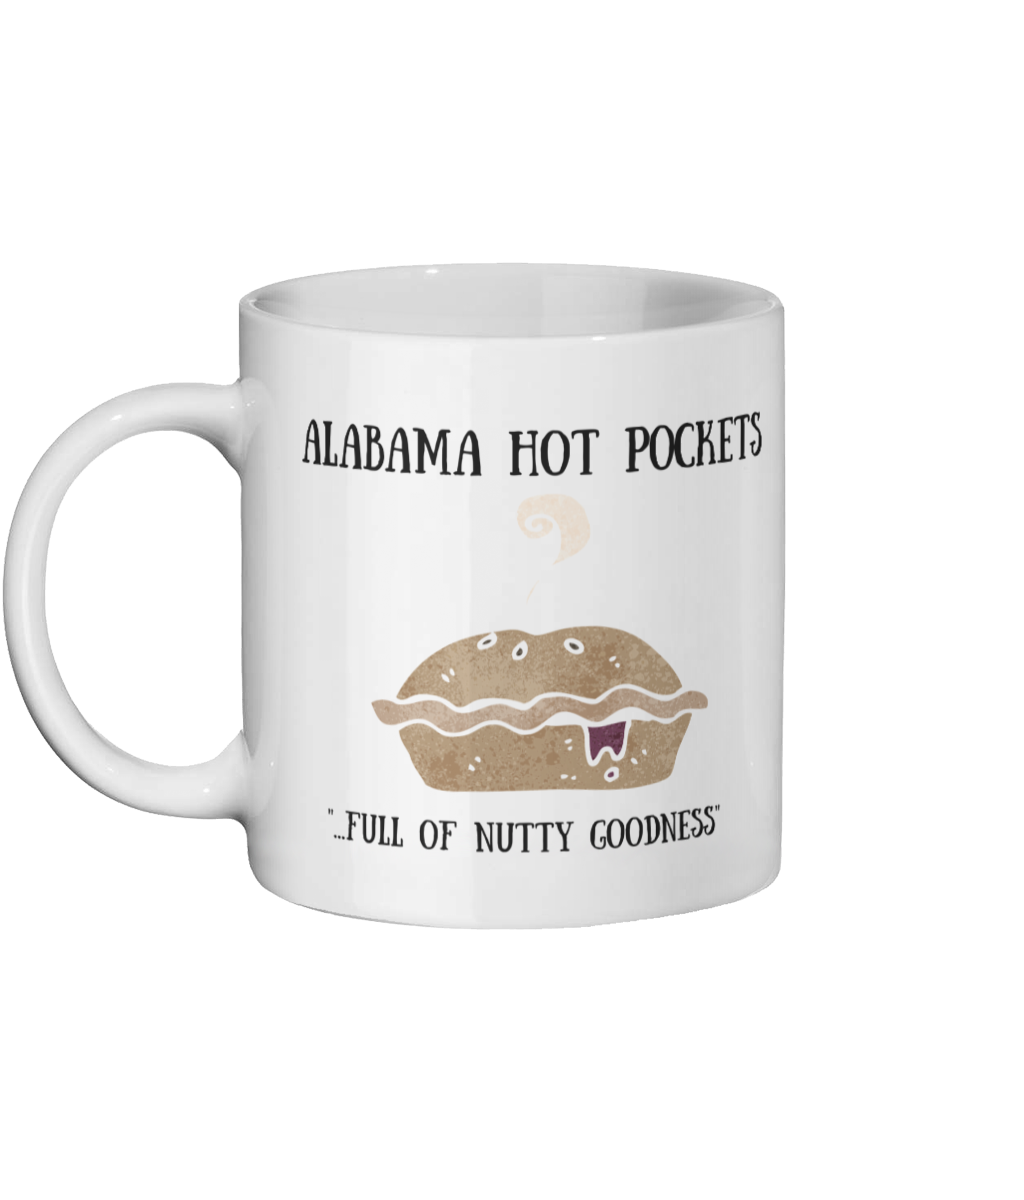 Alabama Hot Pockets Mug.